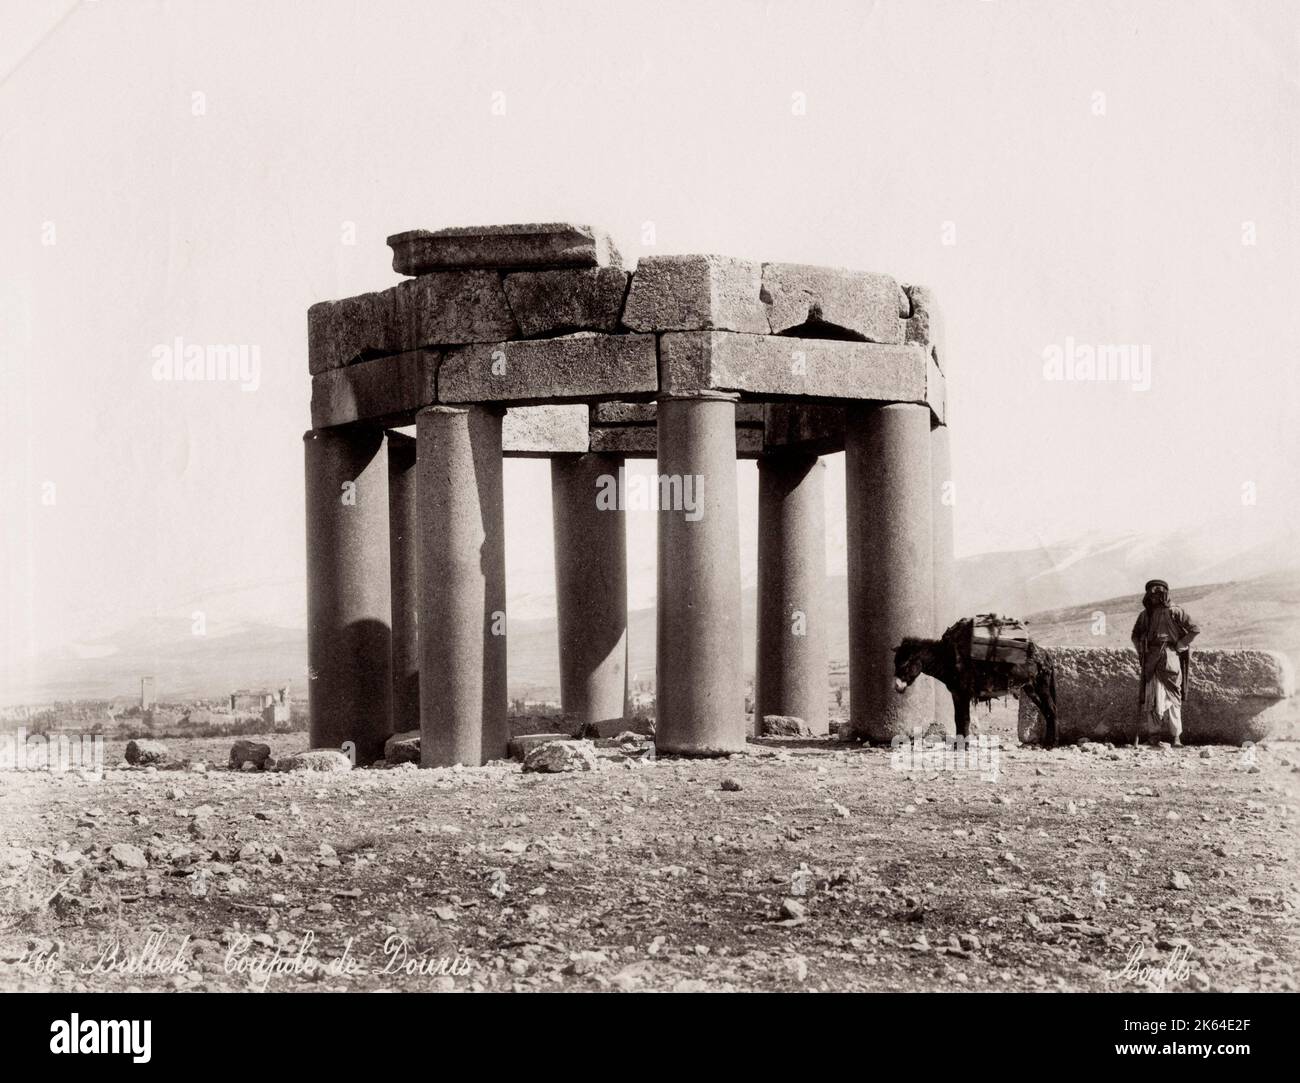 Photographie vintage du 19e siècle : Qubba, kubbet et koubba, tombeau islamique, Duris, Douris, région de Baalbek, Liban. Banque D'Images